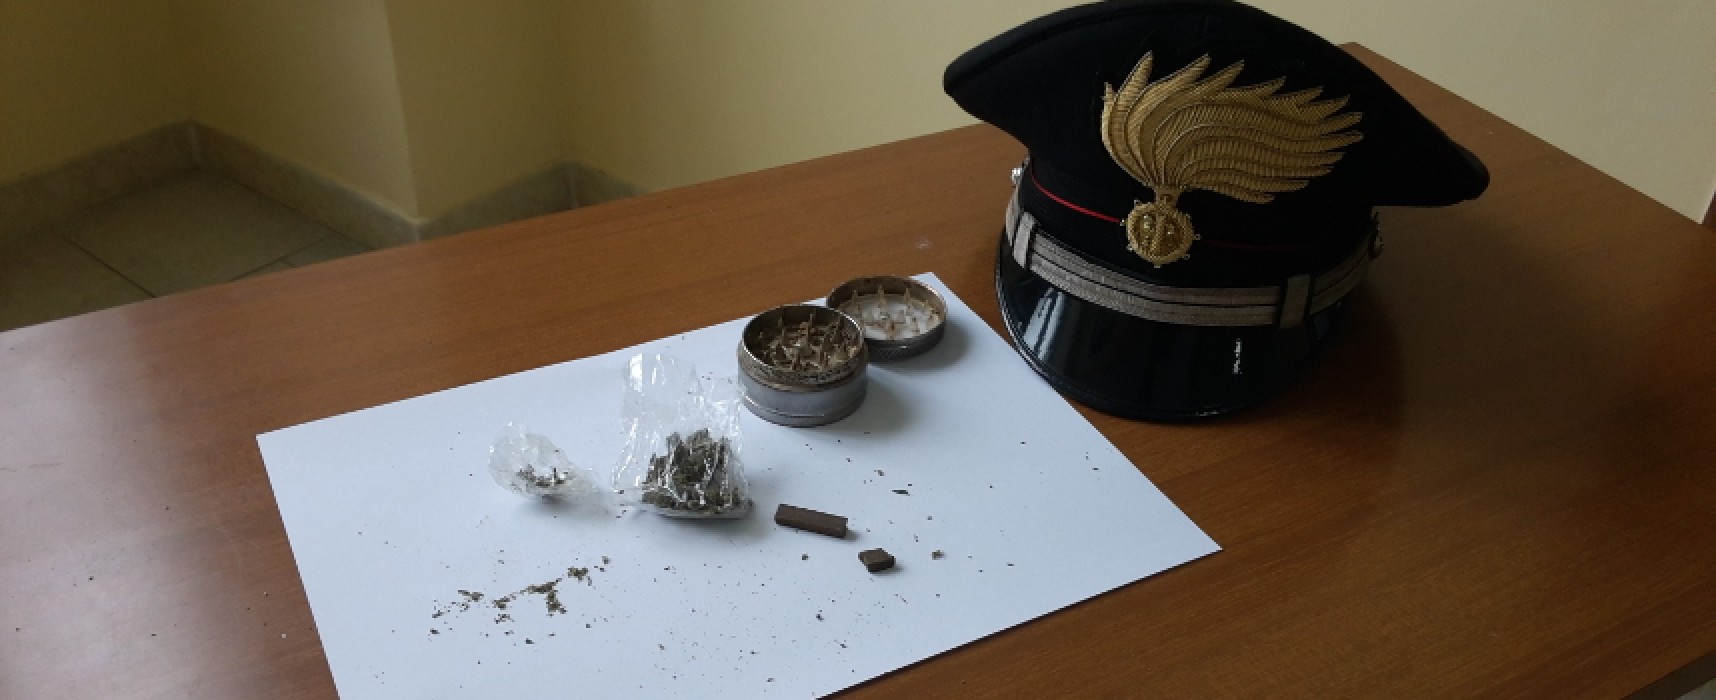 Hashish e marijuana in casa. Carabinieri arrestano 30enne biscegliese sorvegliato speciale